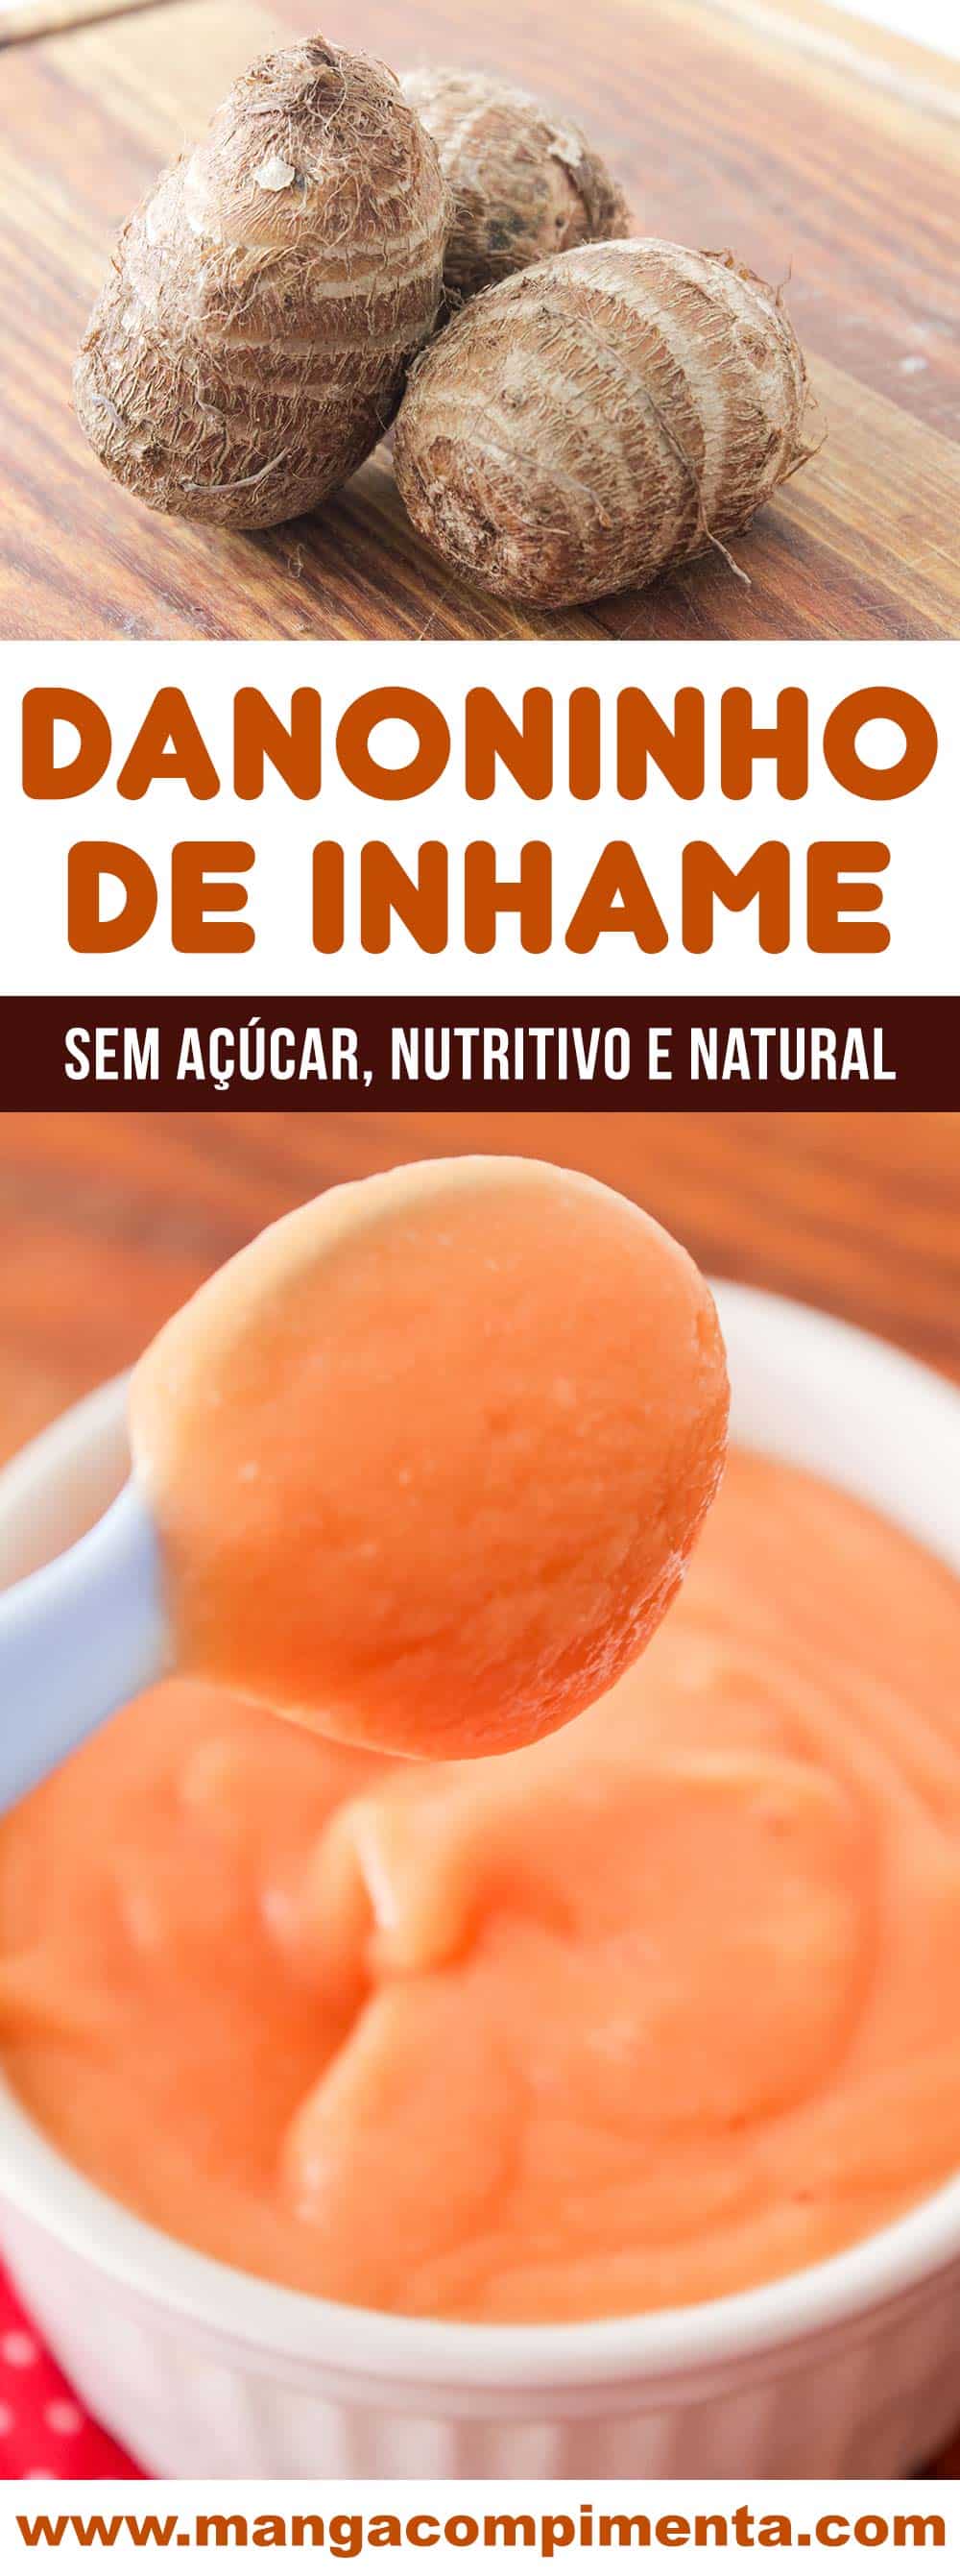 Danoninho de Inhame sabor Mamão - Uma sobremesa sem açúcar, nutritiva e natural (sem conservantes).